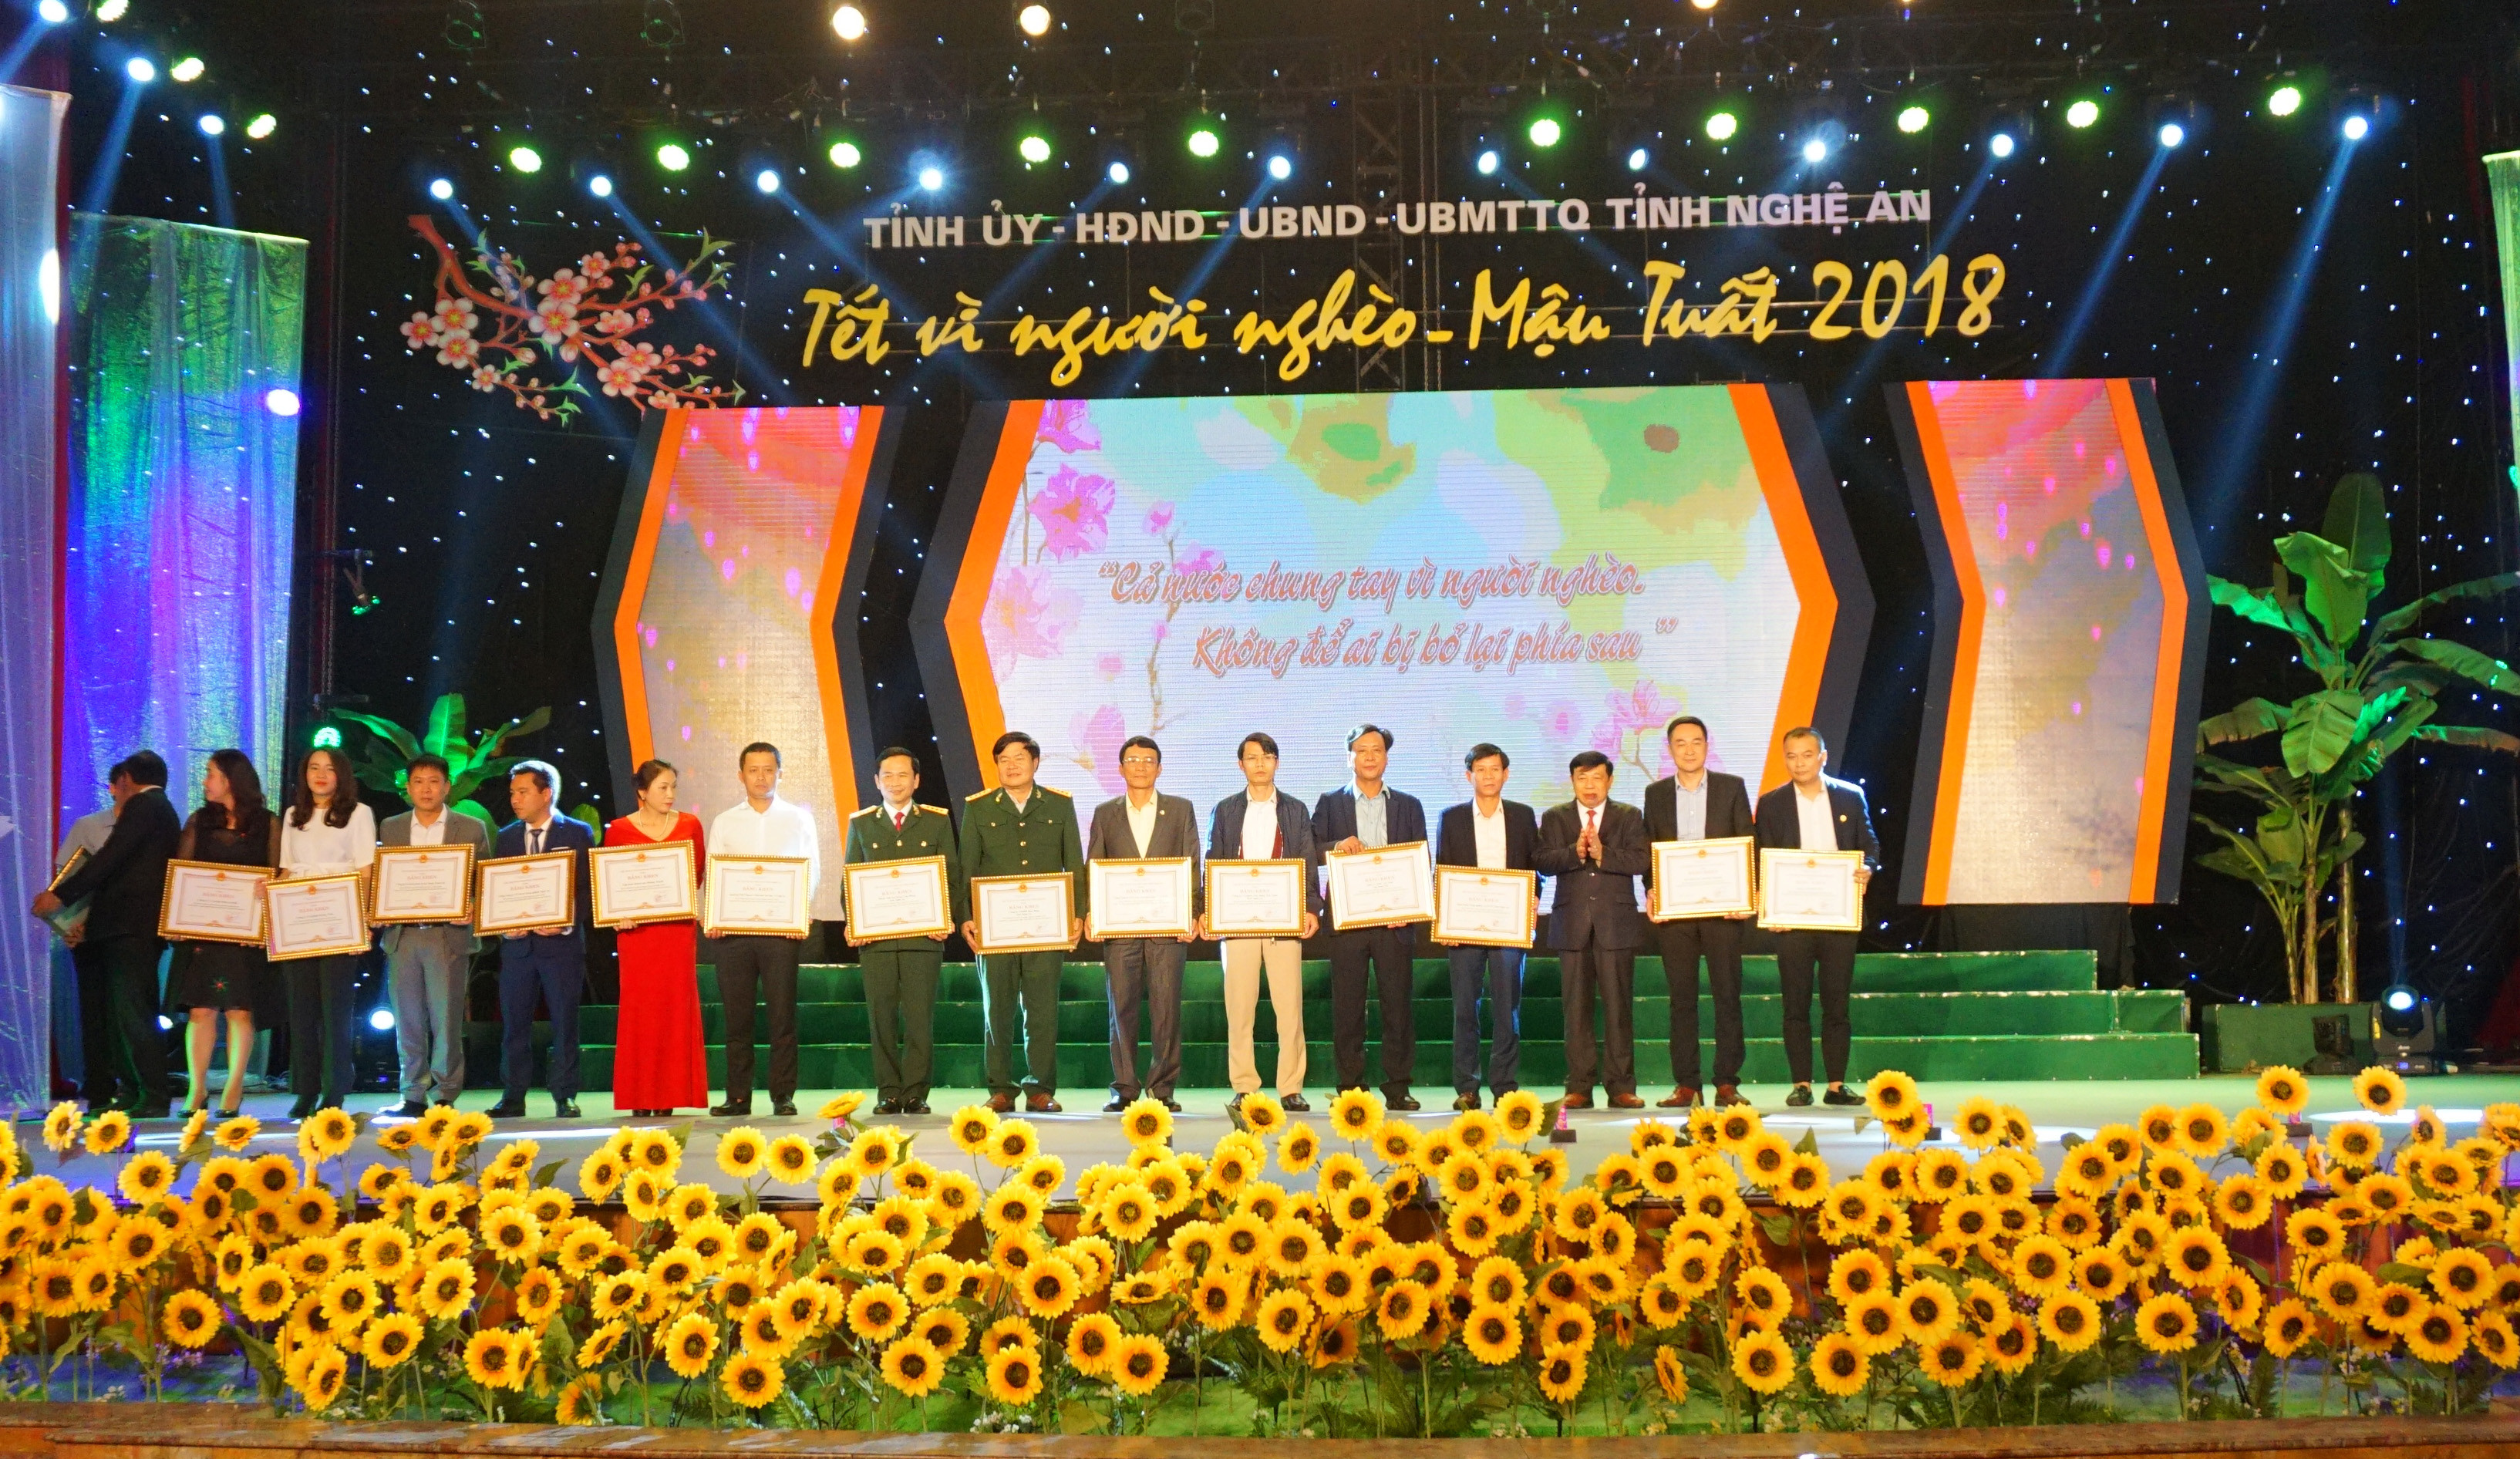 Đồng chí Nguyễn Xuân Đường trao bằng khen cho các tập thể, cá nhân có nhiều đóng góp trong chương trình 